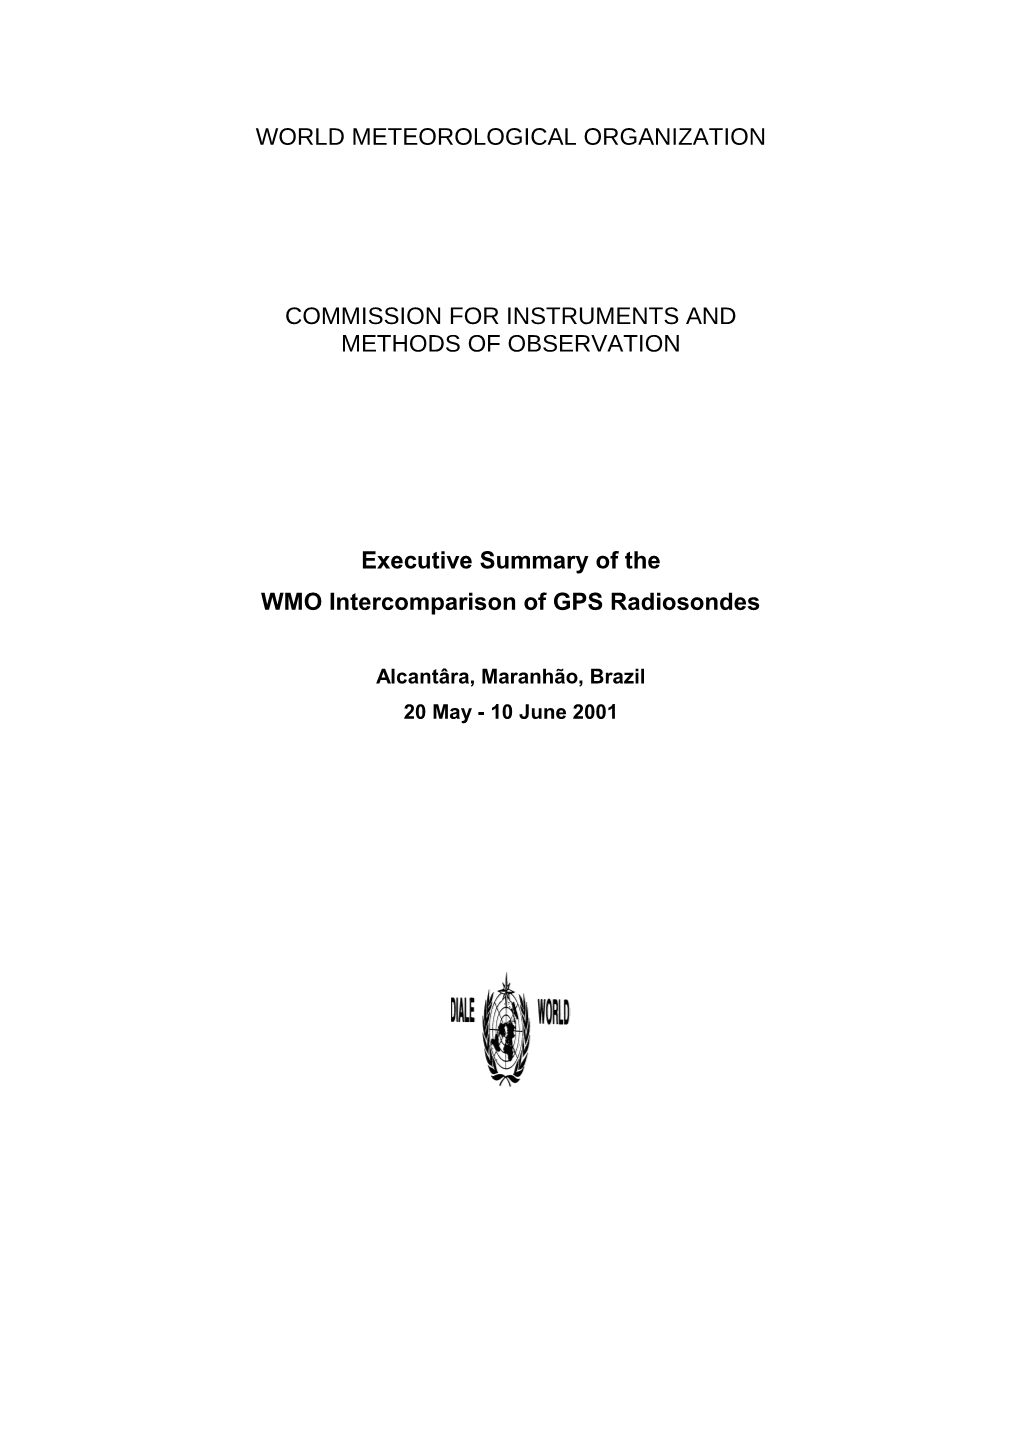 Executive Summary GTS RSO Intercomparison, Brazil 2001